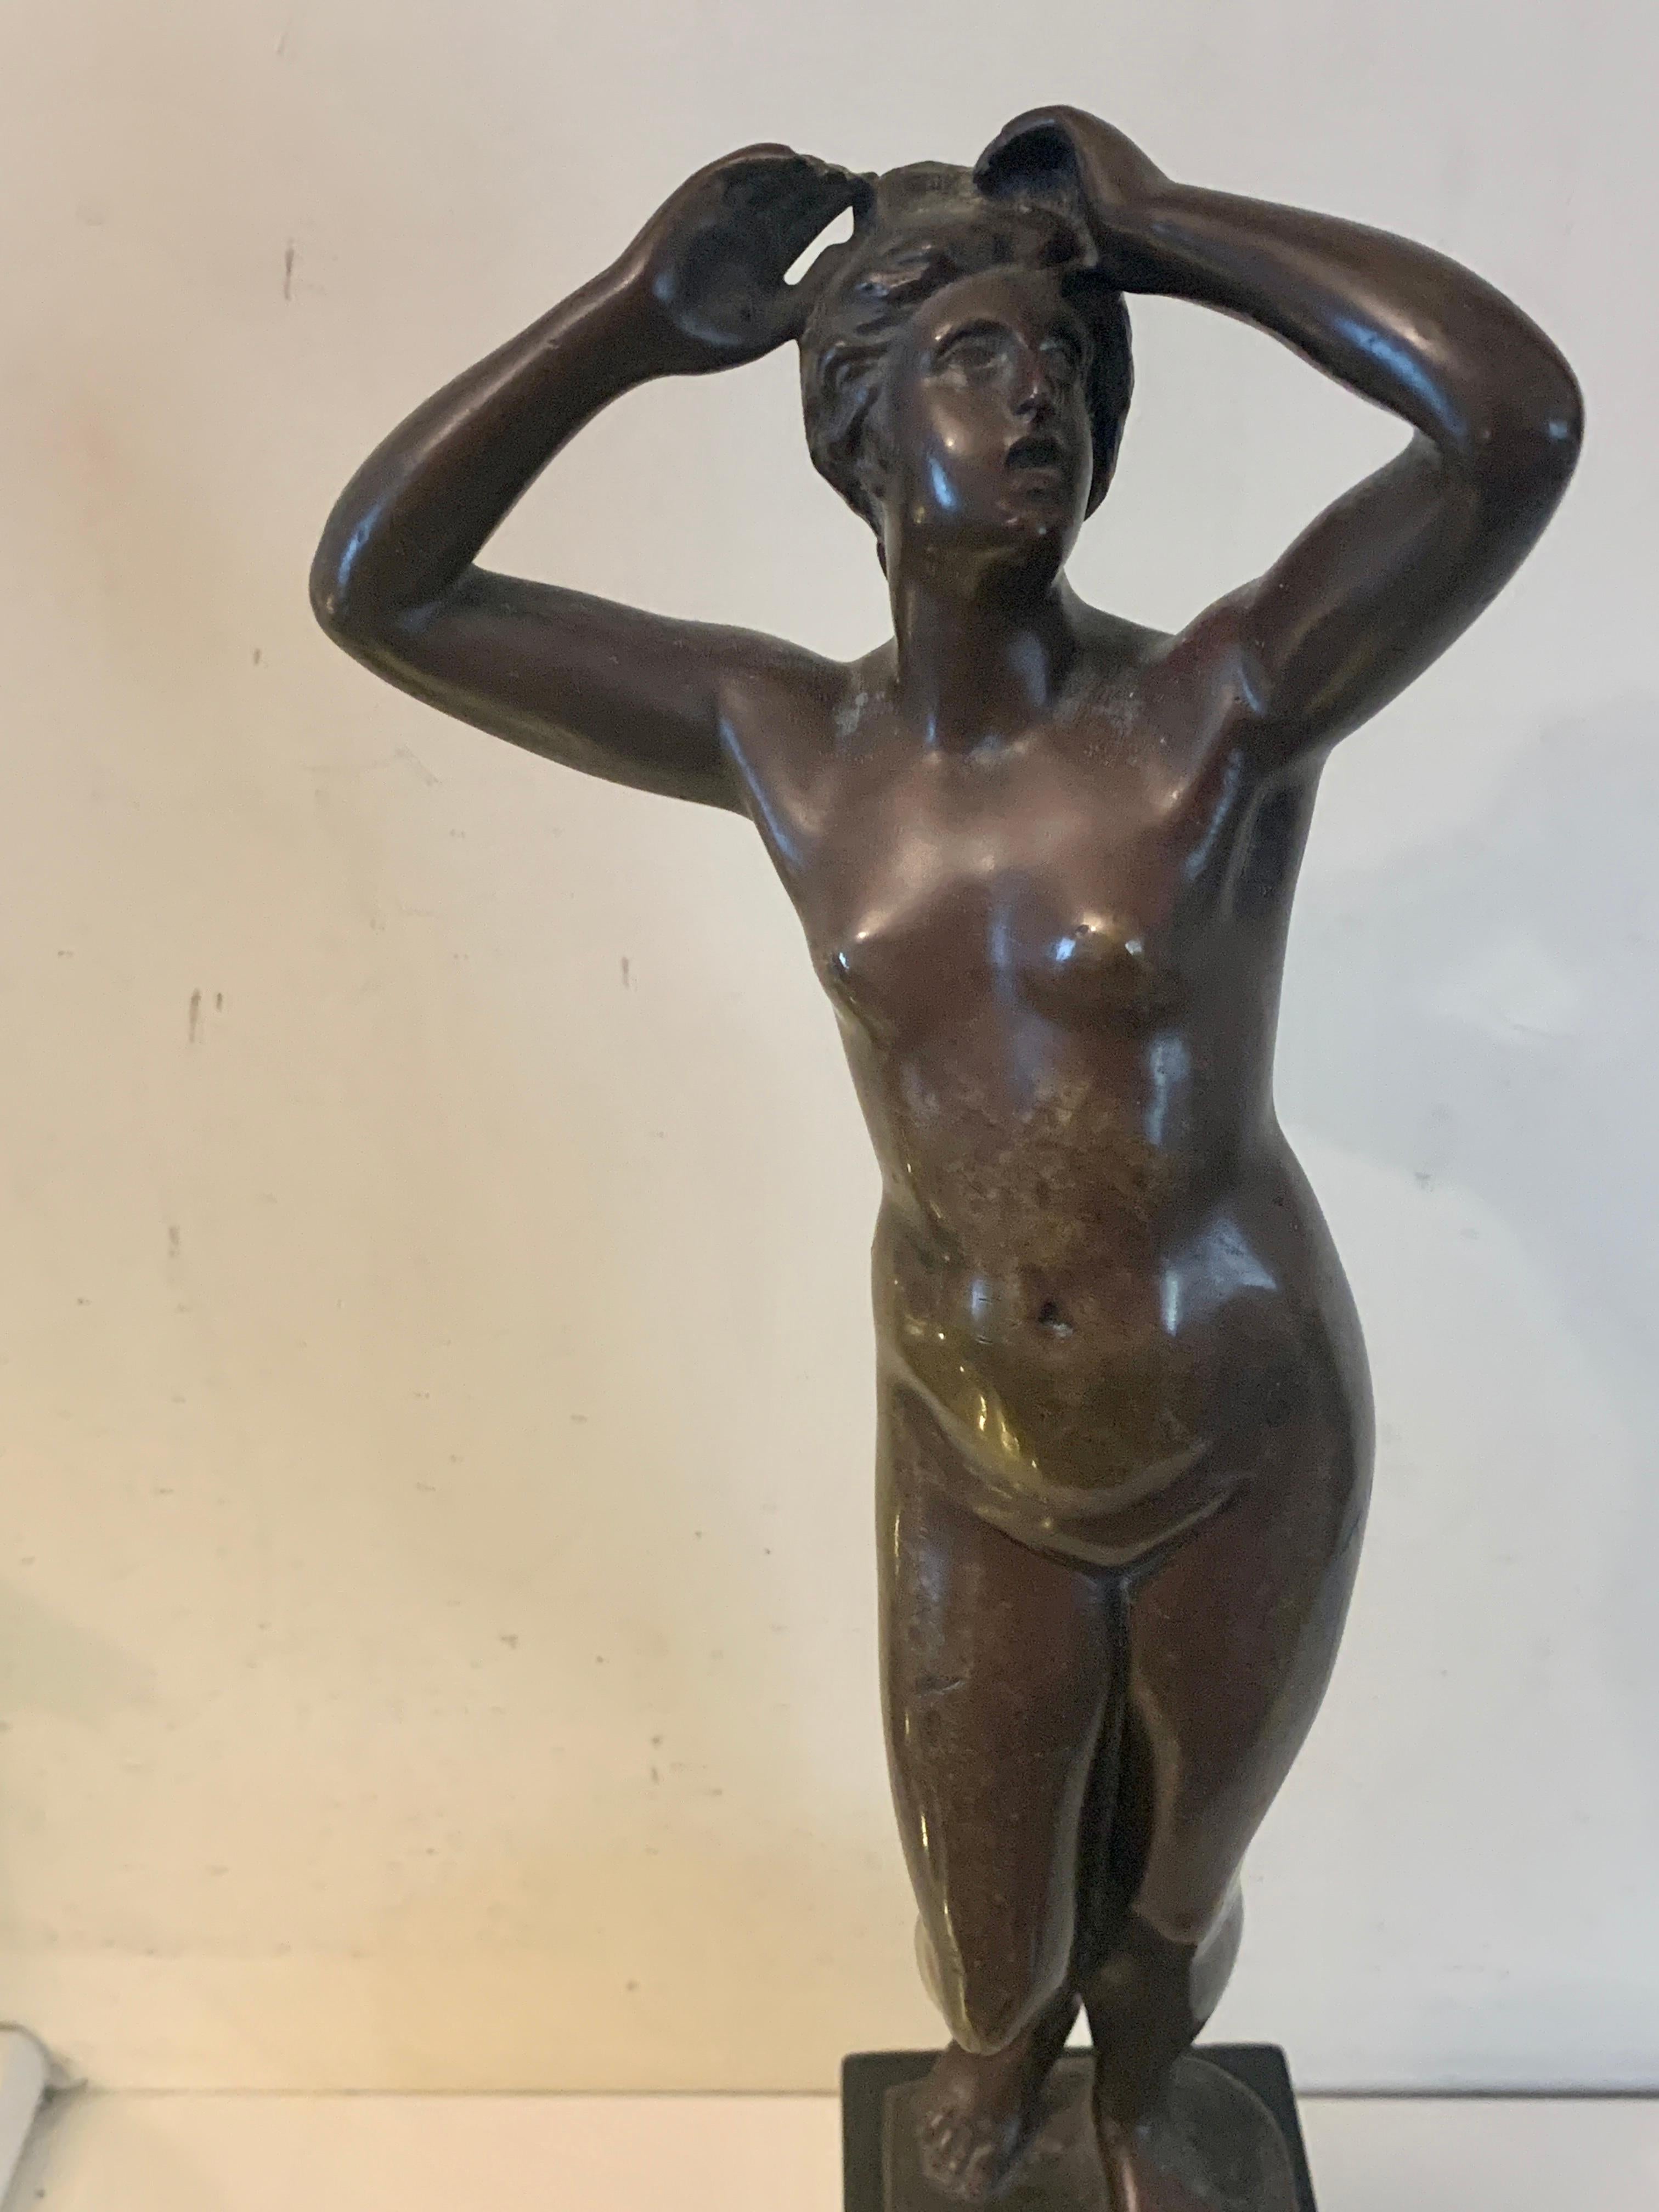 Französische Bronze aus dem 19. Jahrhundert, die eine nackte Frau im Stehen zeigt. – Sculpture von Cartinet